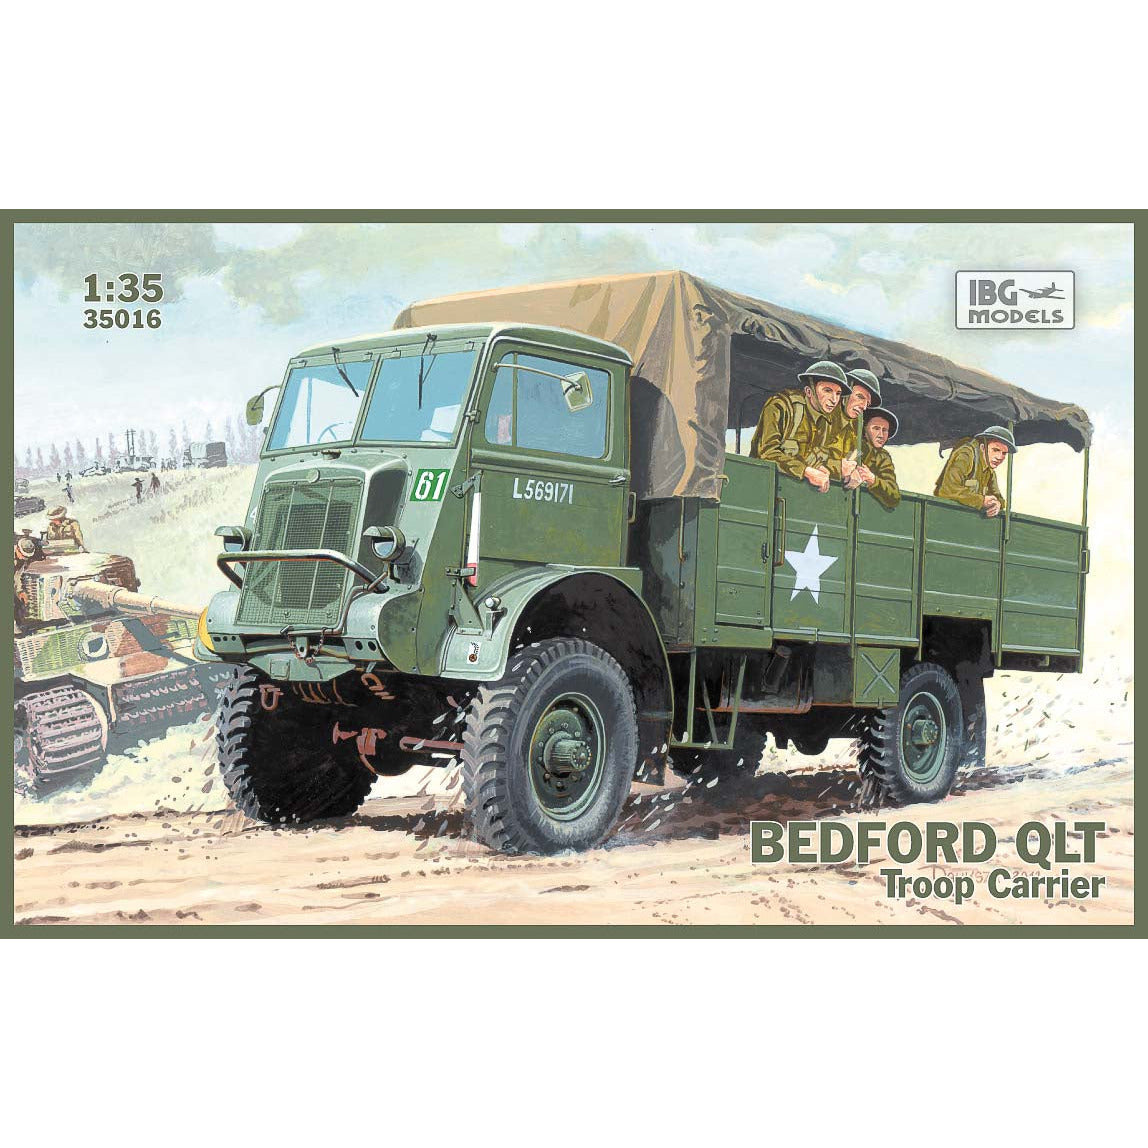 Bedford QLT Troop Carrier 1/35 #35016 by IBG Models